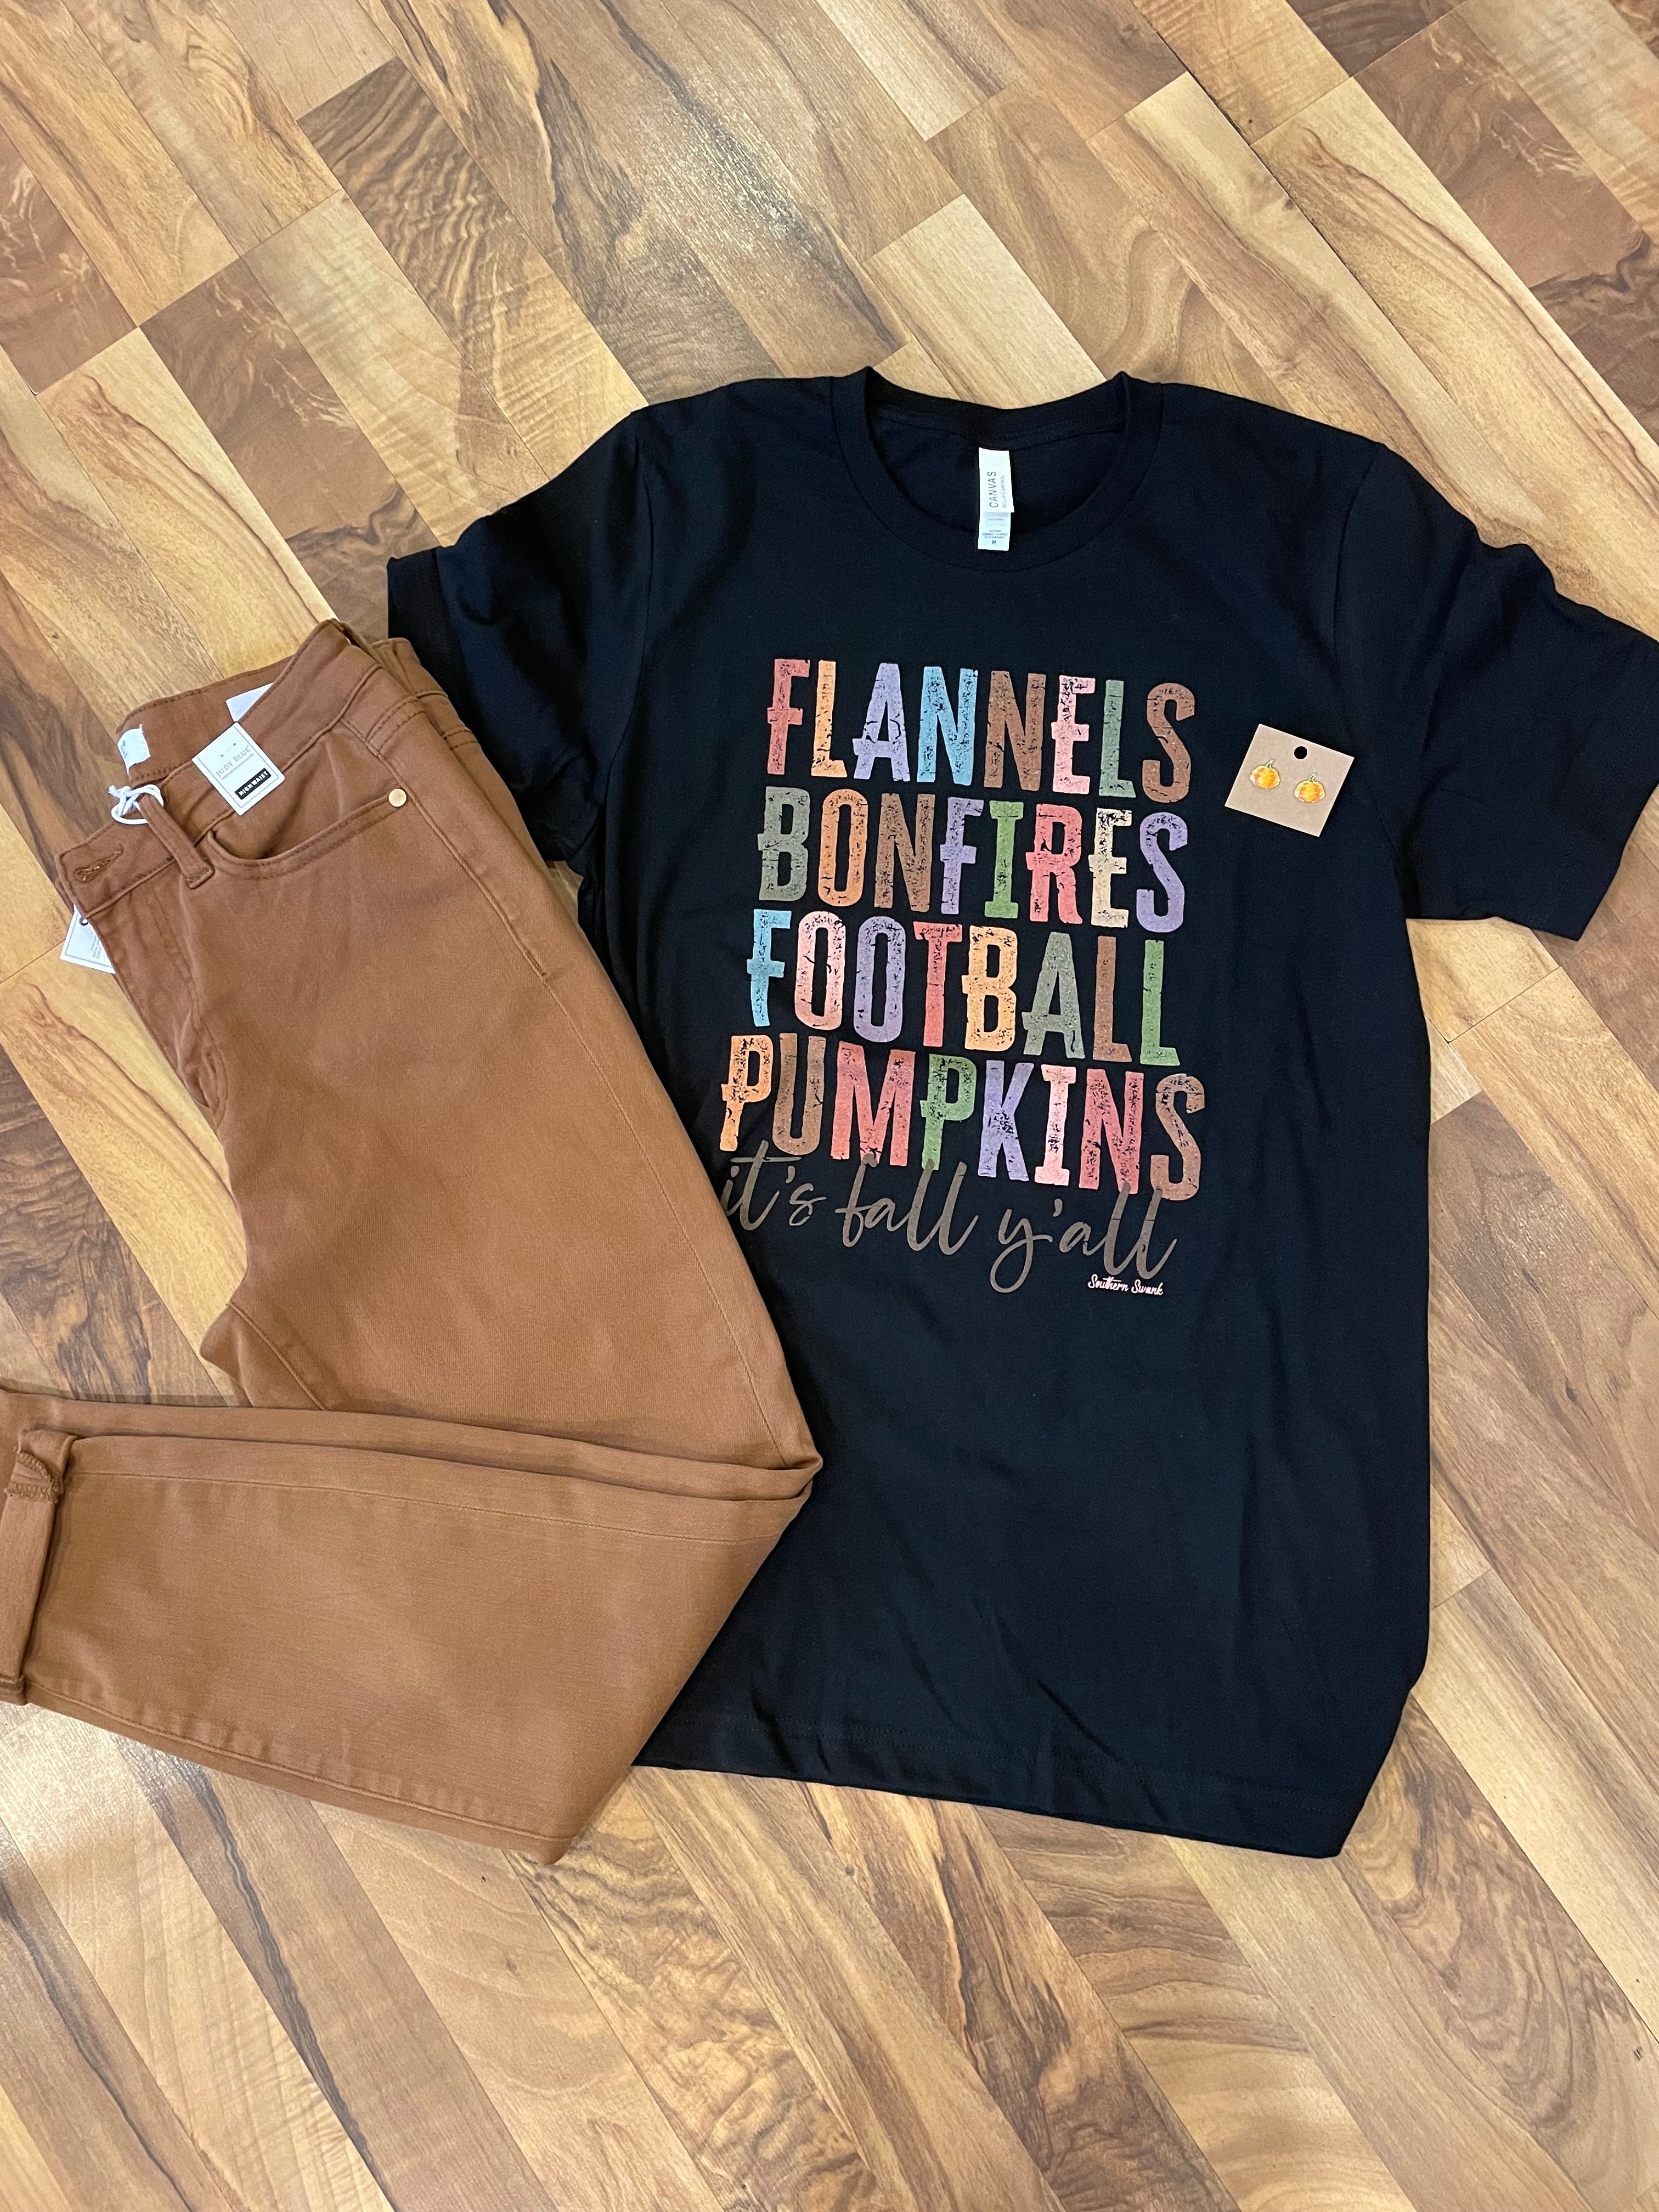 Flannels bonfires football pumpkins, its fall y’all ￼